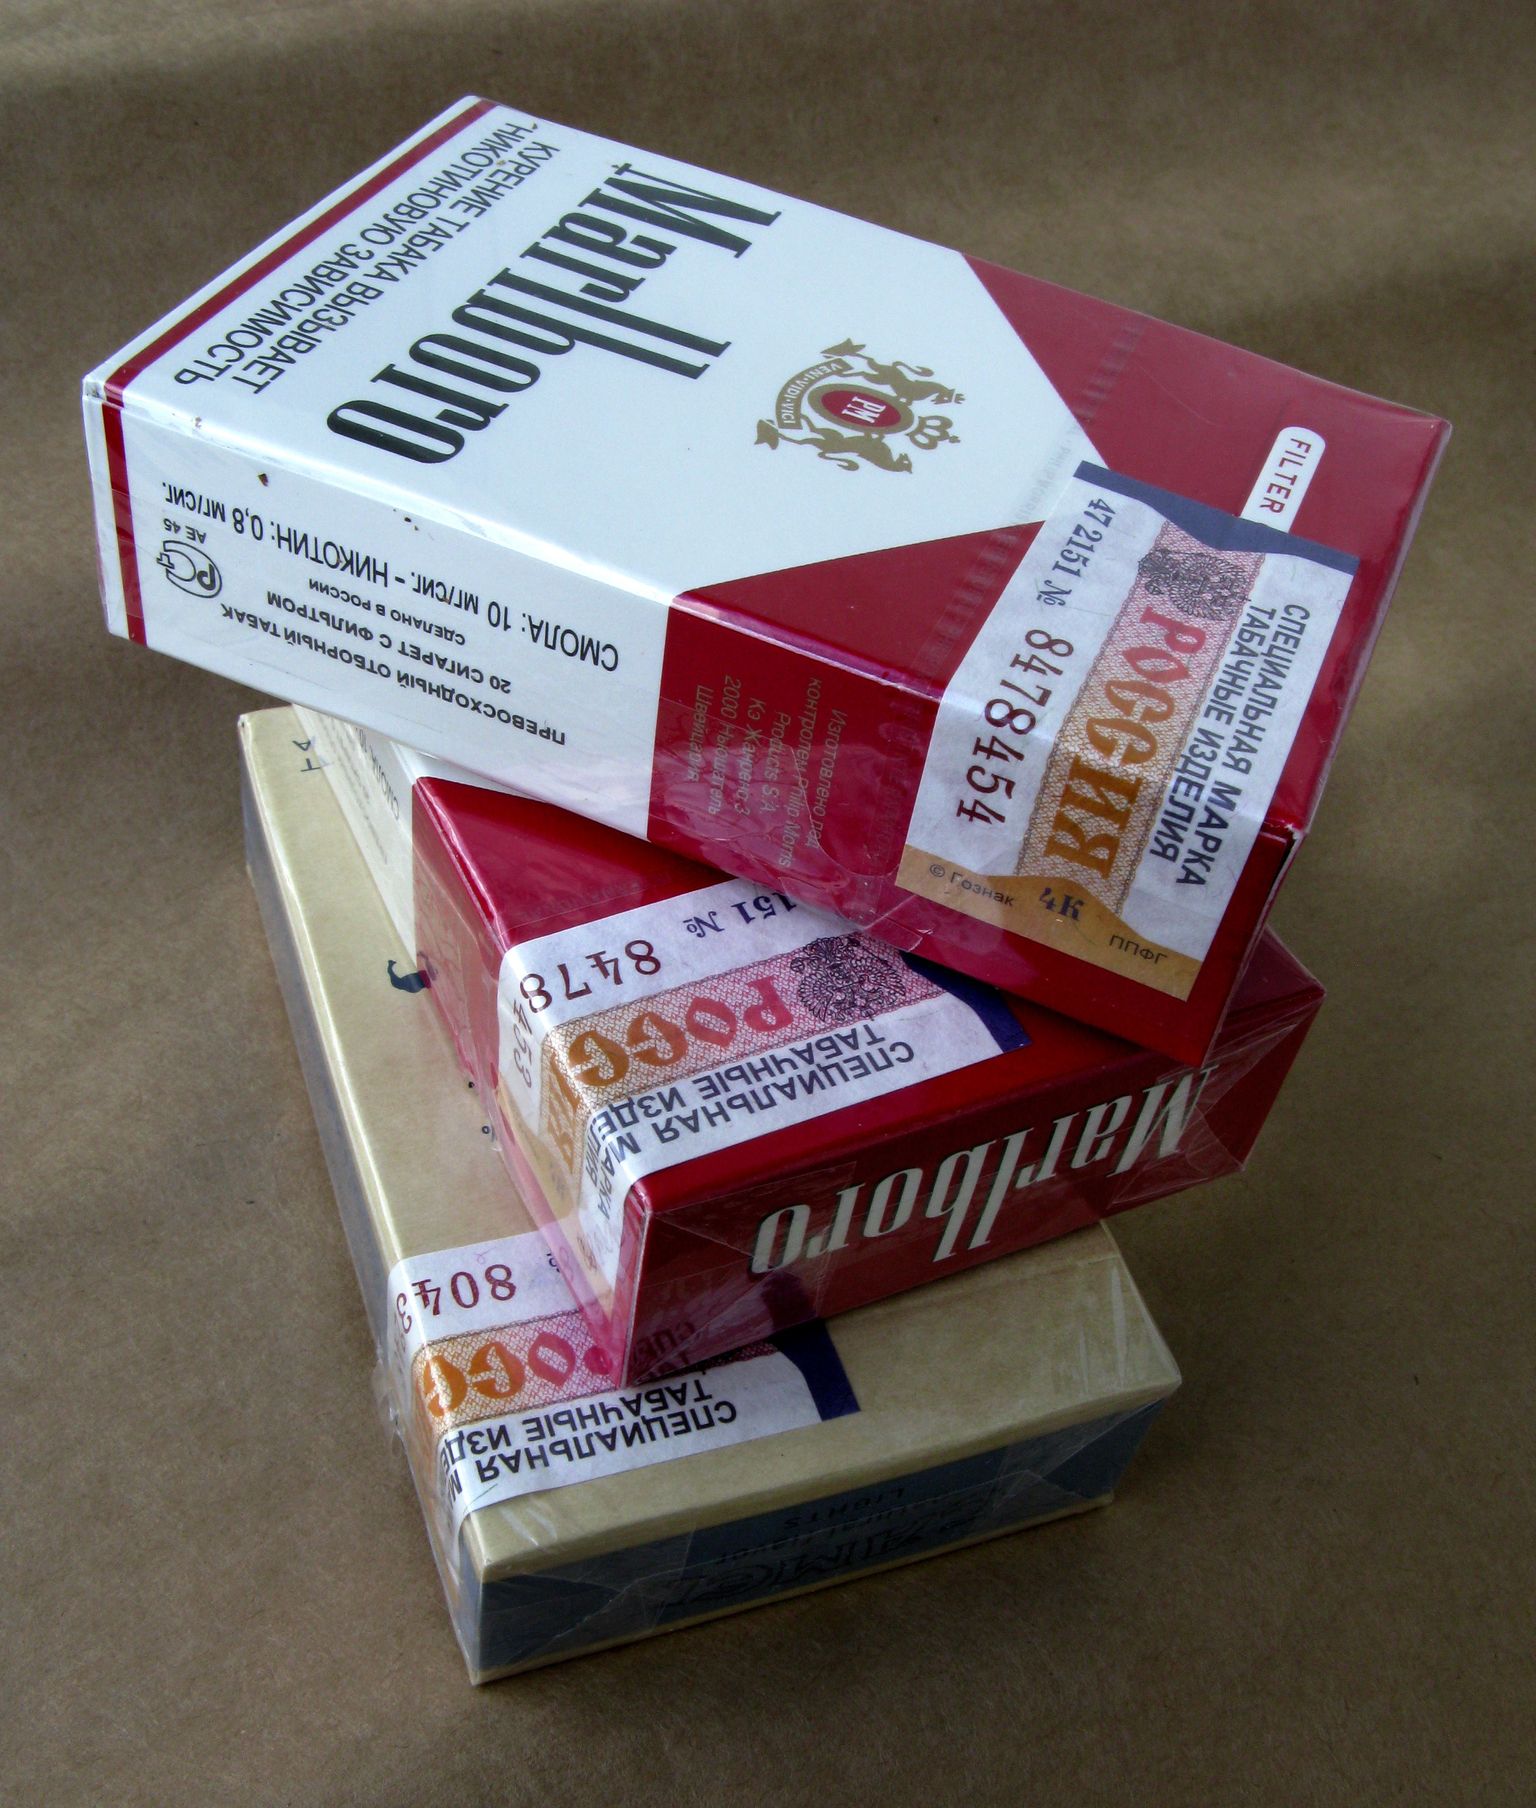 Soomlased ei tohi Venemaalt tuua tubakatooteid, kui nad on seal viibinud vähem kui ööpäeva.